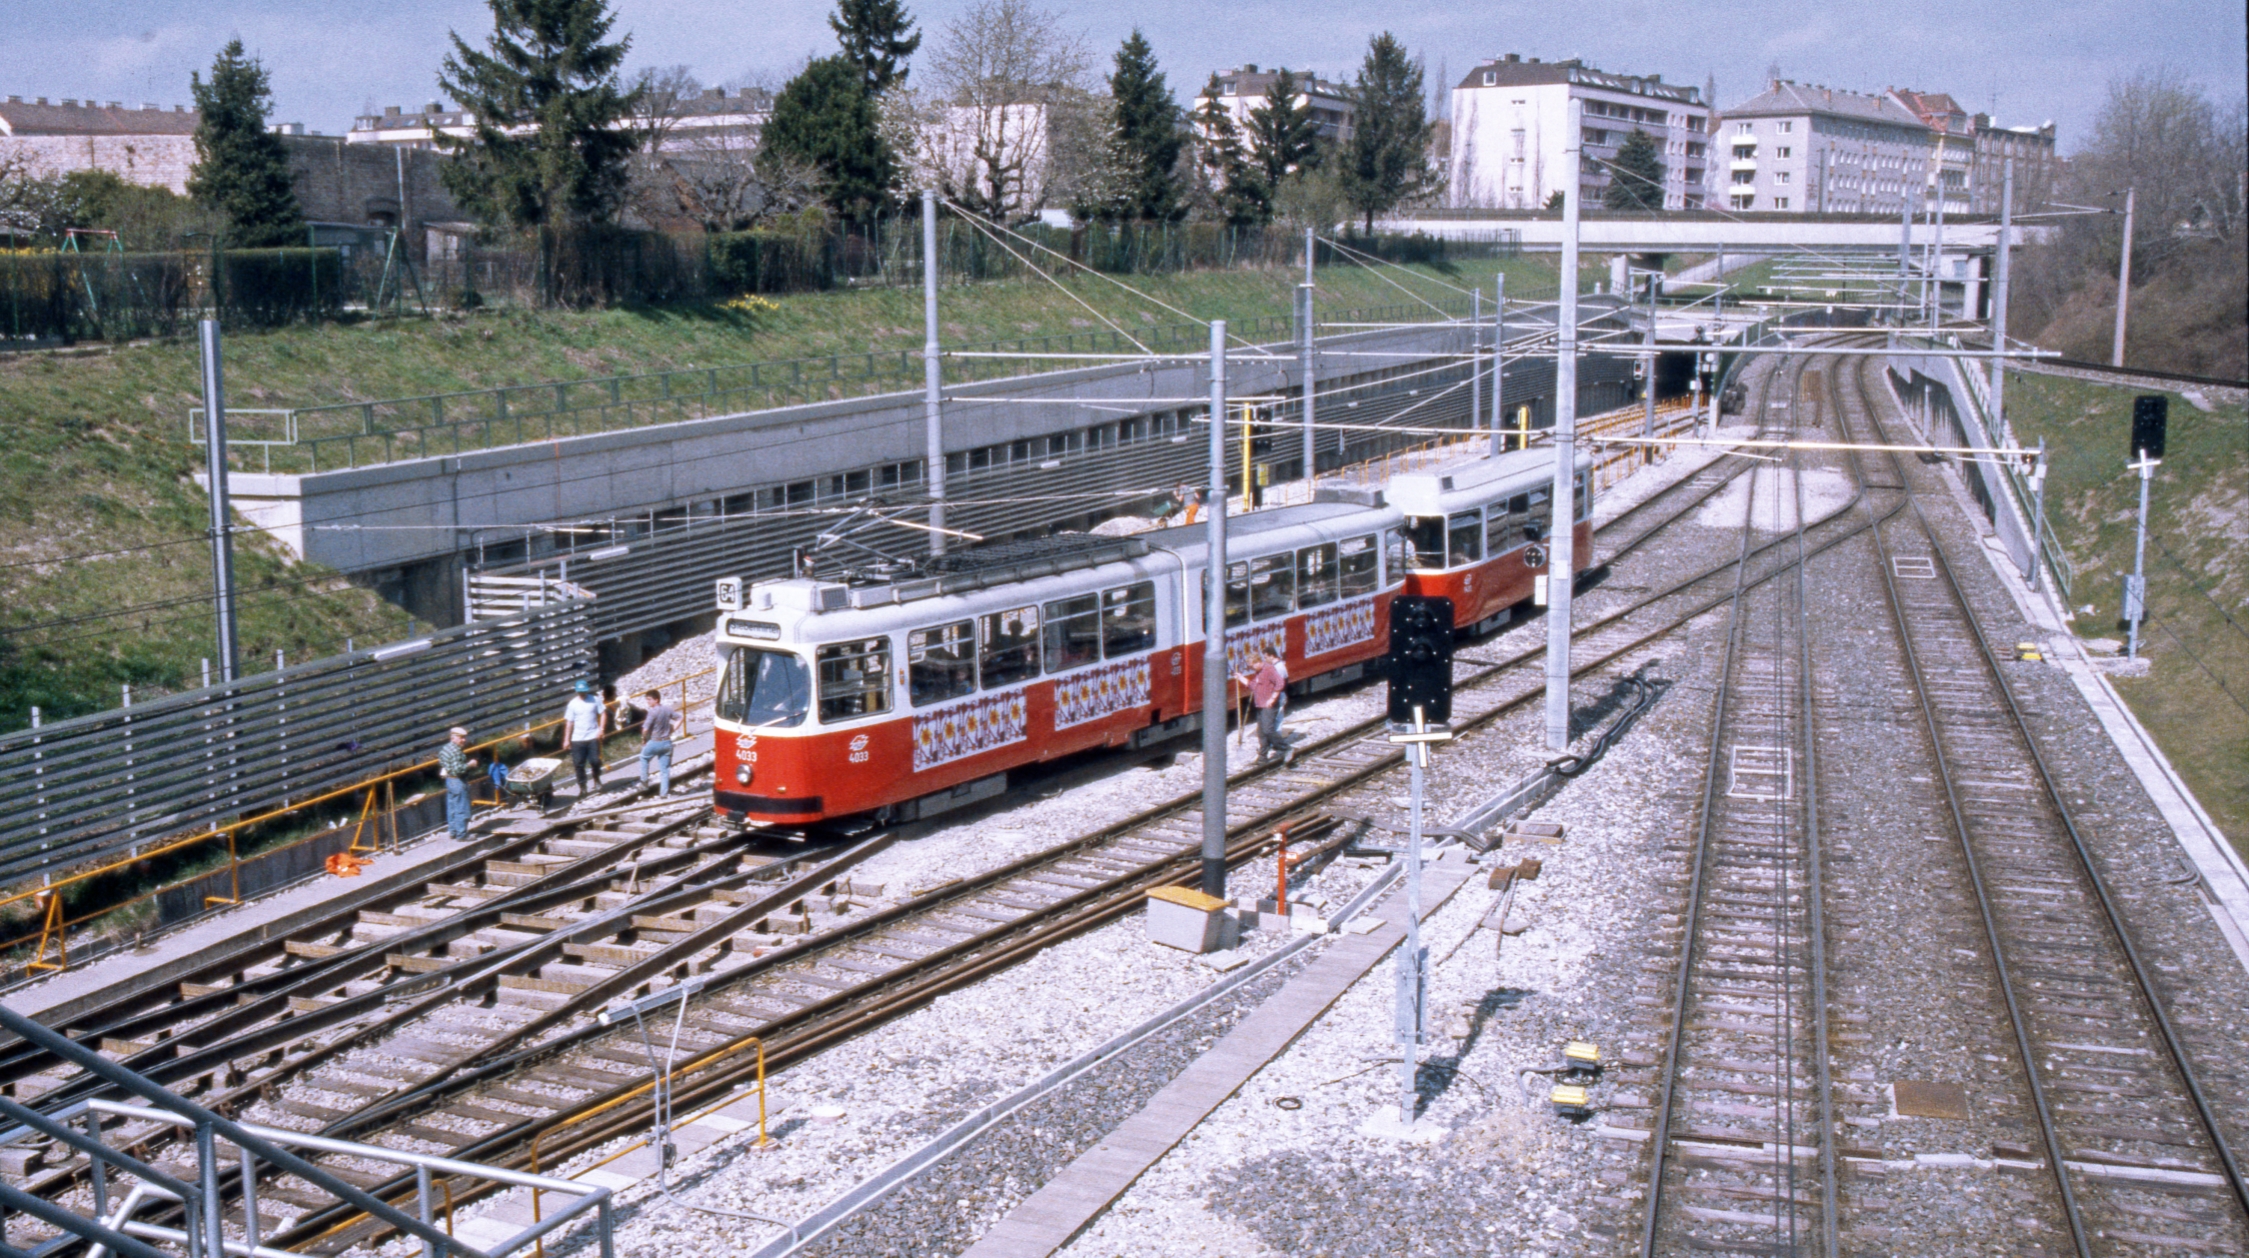  Zug der Linie 64 in Fahrtrichtung Siebenhirten  während Umbau zur U6, März 1995